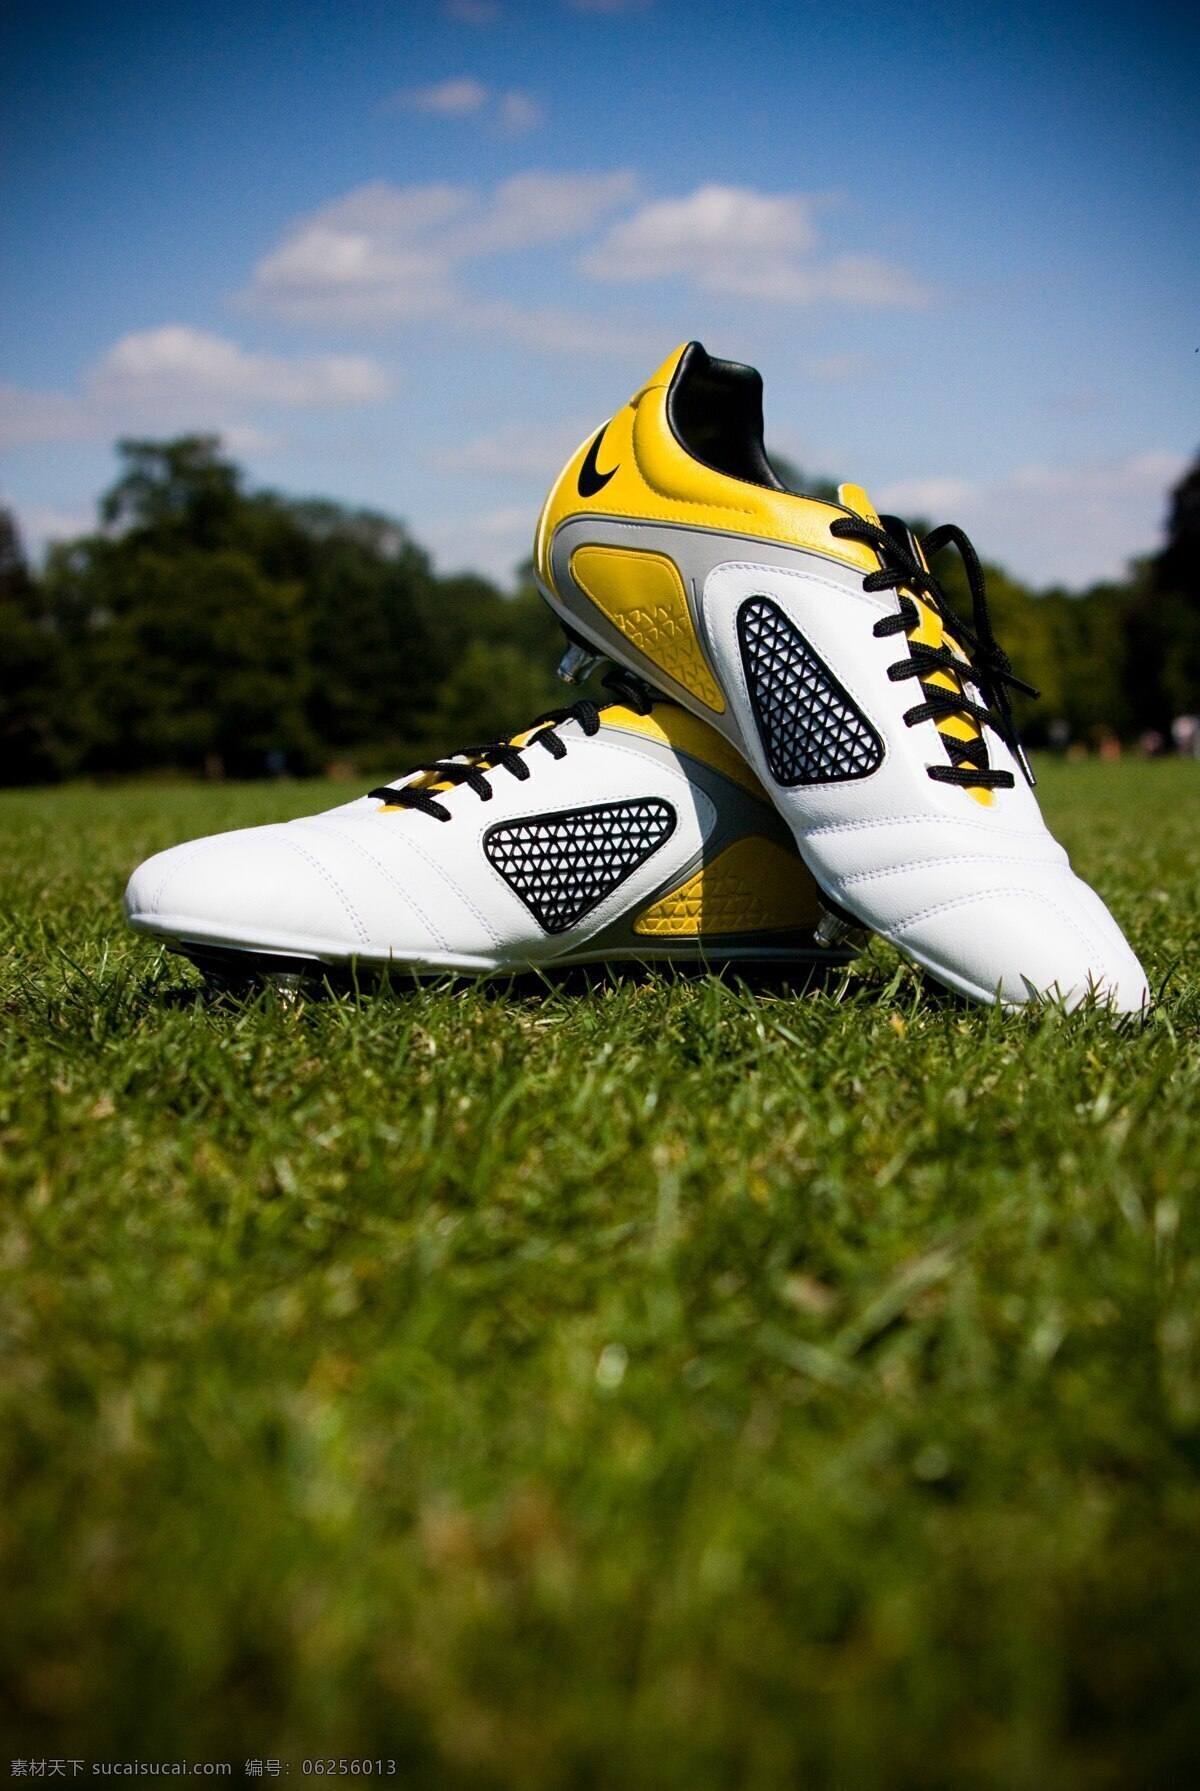 足球运动鞋 足球 足球鞋 足球运动 运动鞋 鞋子设计 特写 广告摄影 生活百科 体育用品